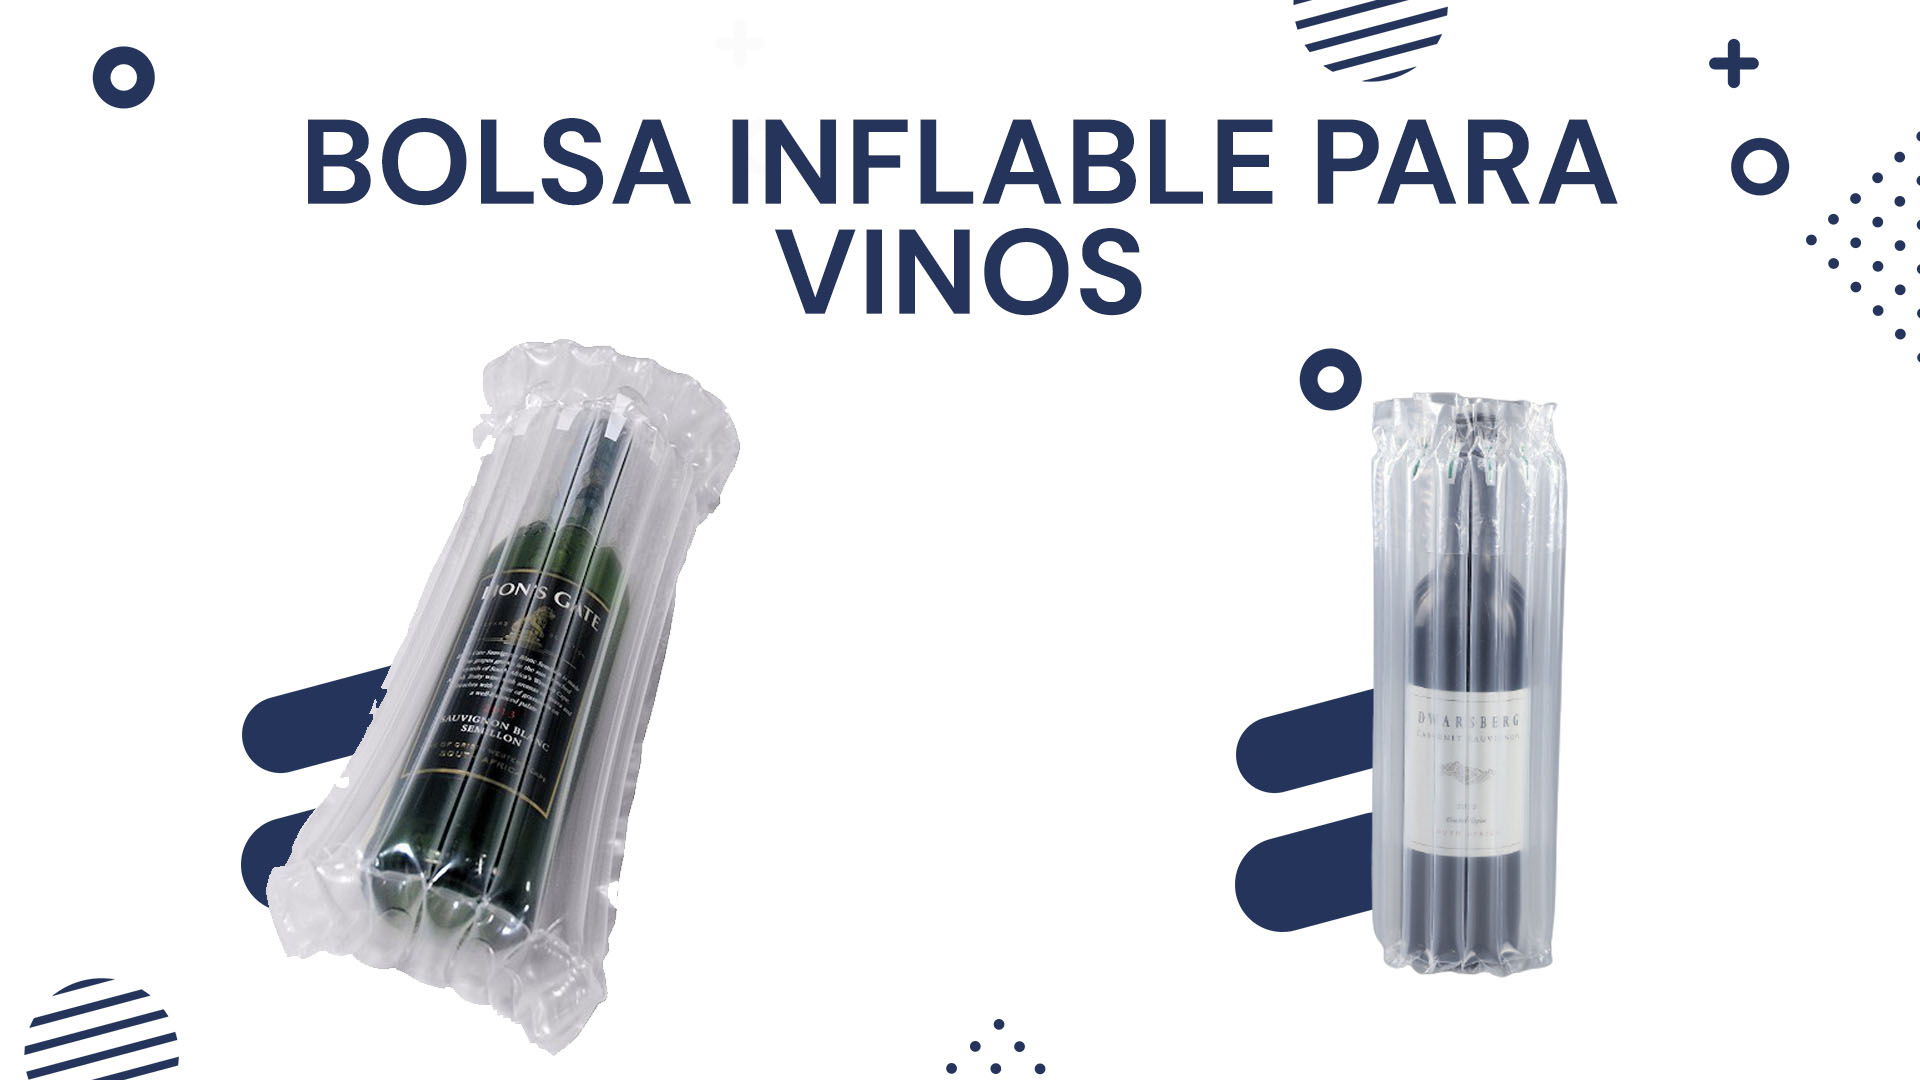 Bolsa inflable para vinos Bolsa inflable para vinos - La mejor opción para tu empaque